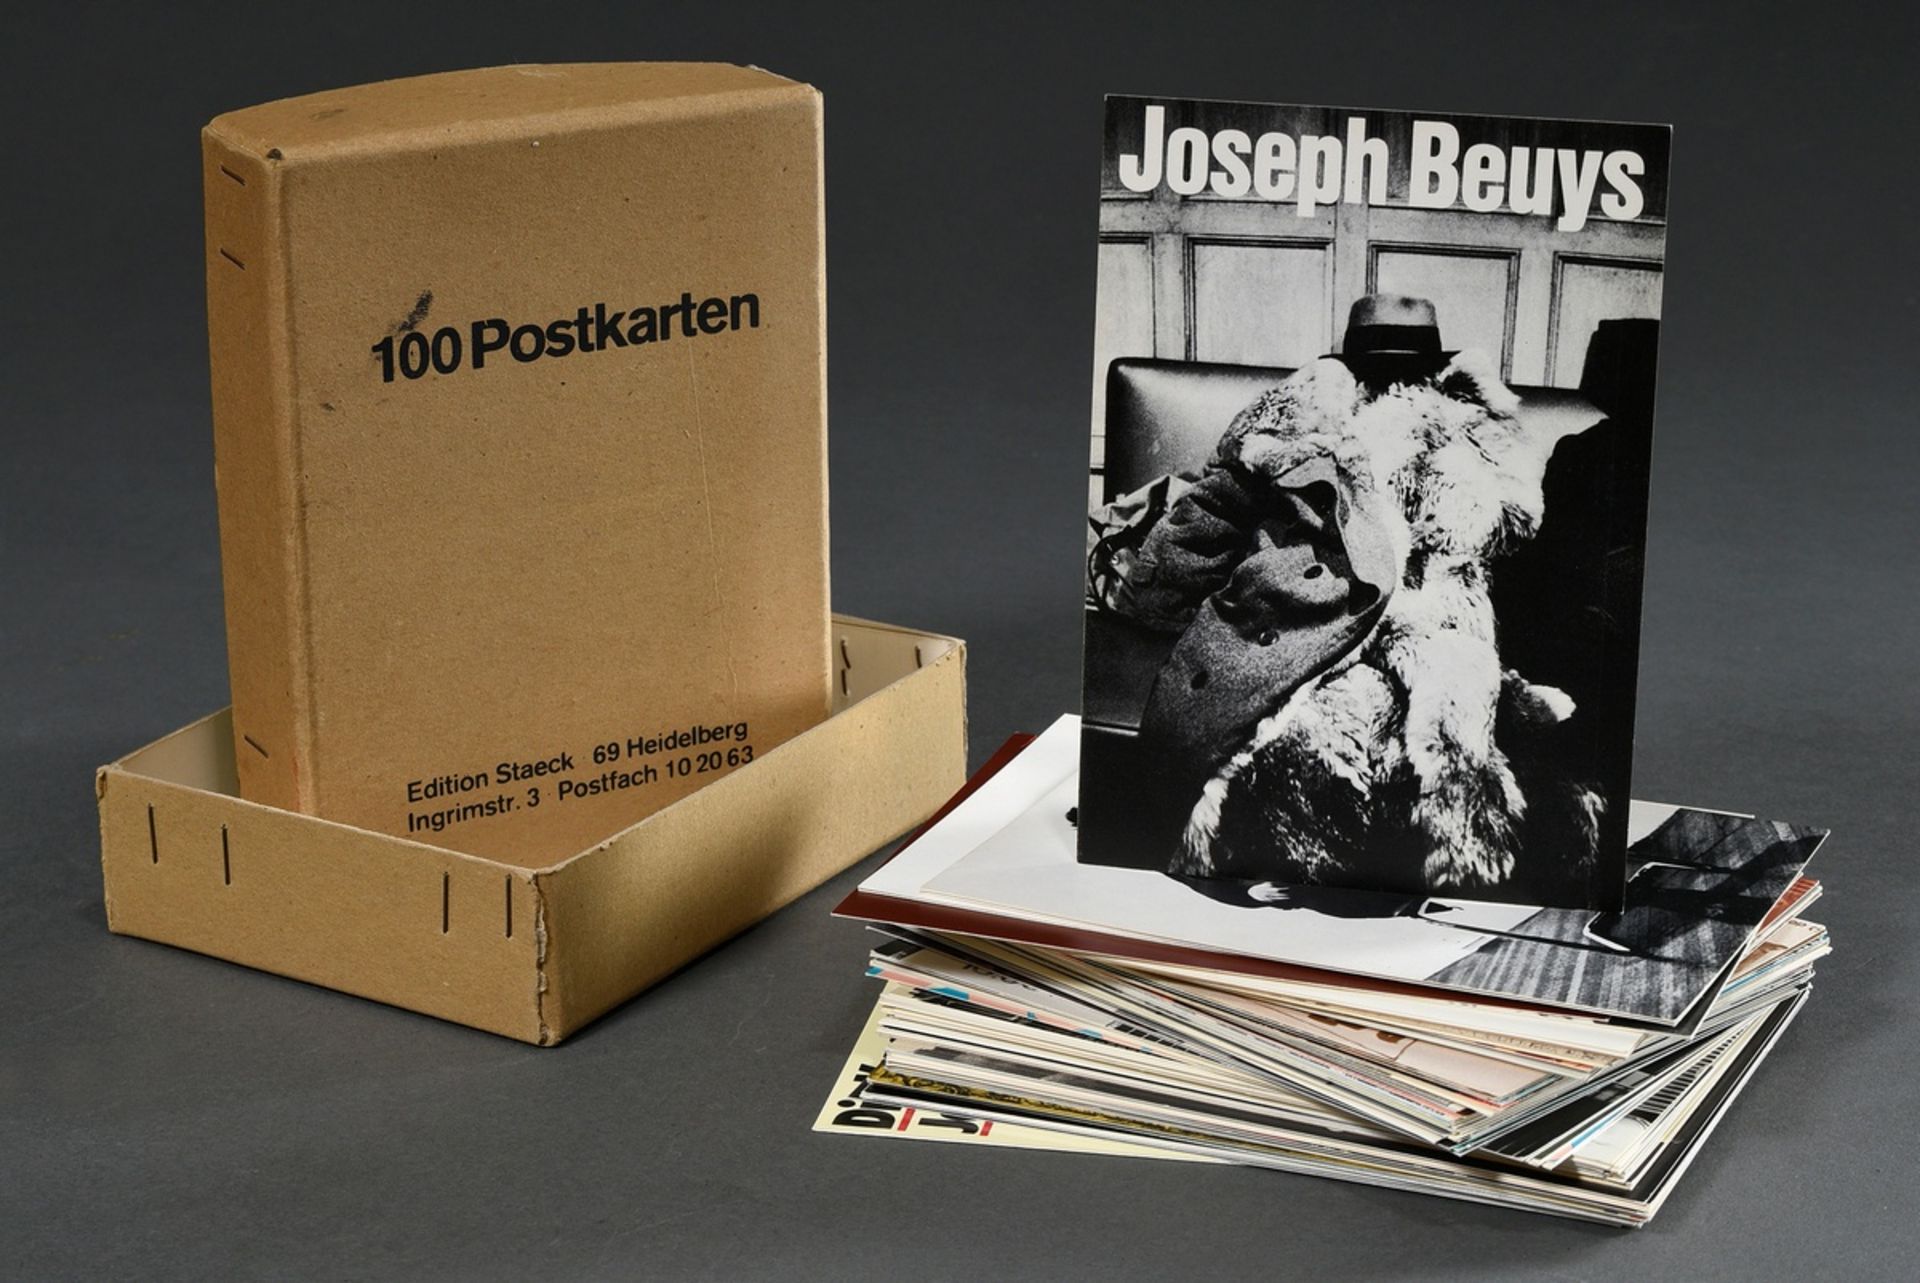 Original-Pappschachtel "100 Postkarten" mit ca. 111 Postkarten u.a. von Klaus Staeck, Joseph Beuys,